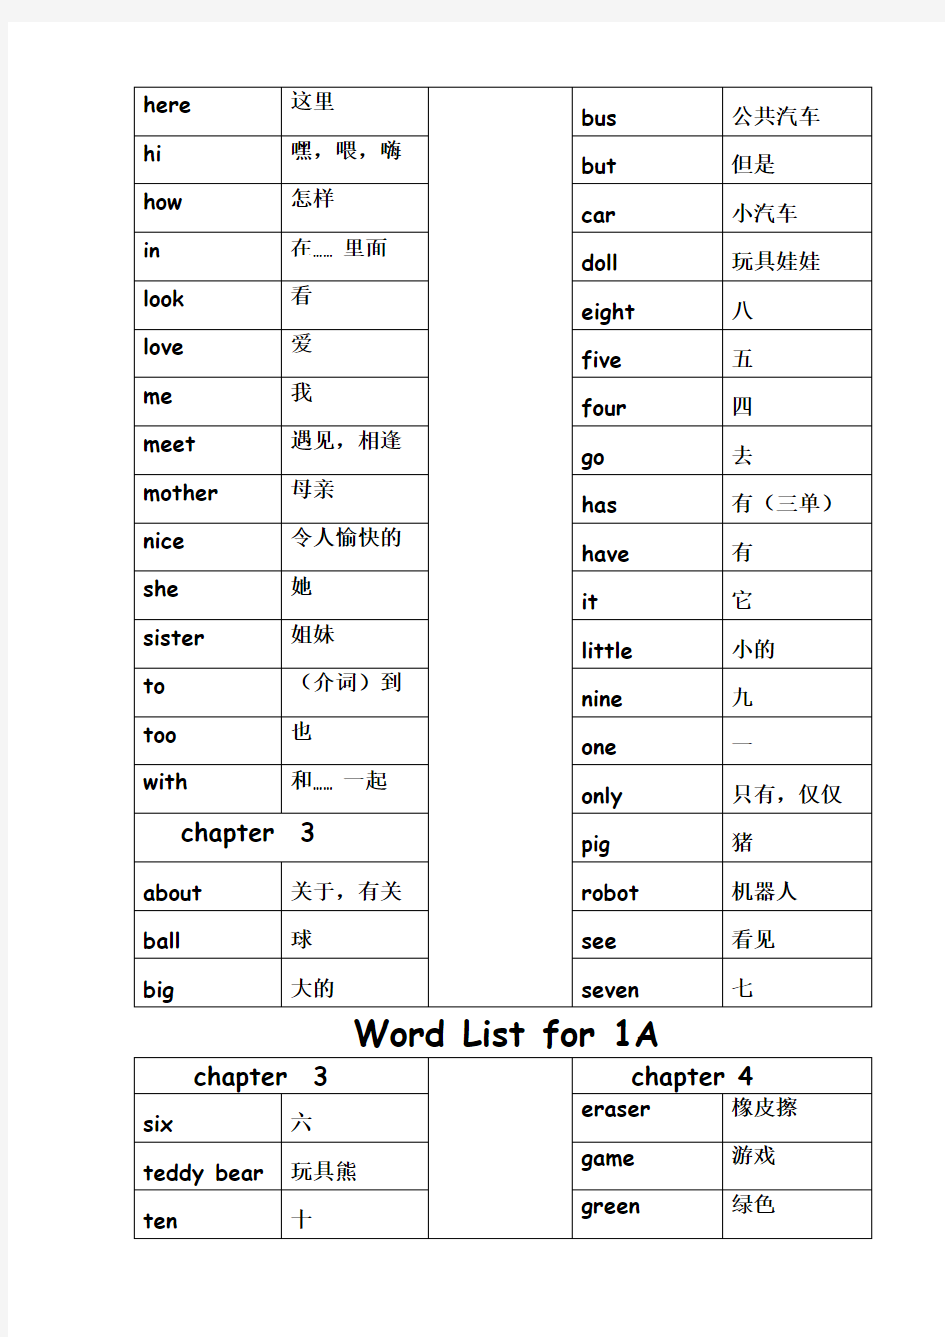 新版香港朗文WTEA-B全部单词汇总